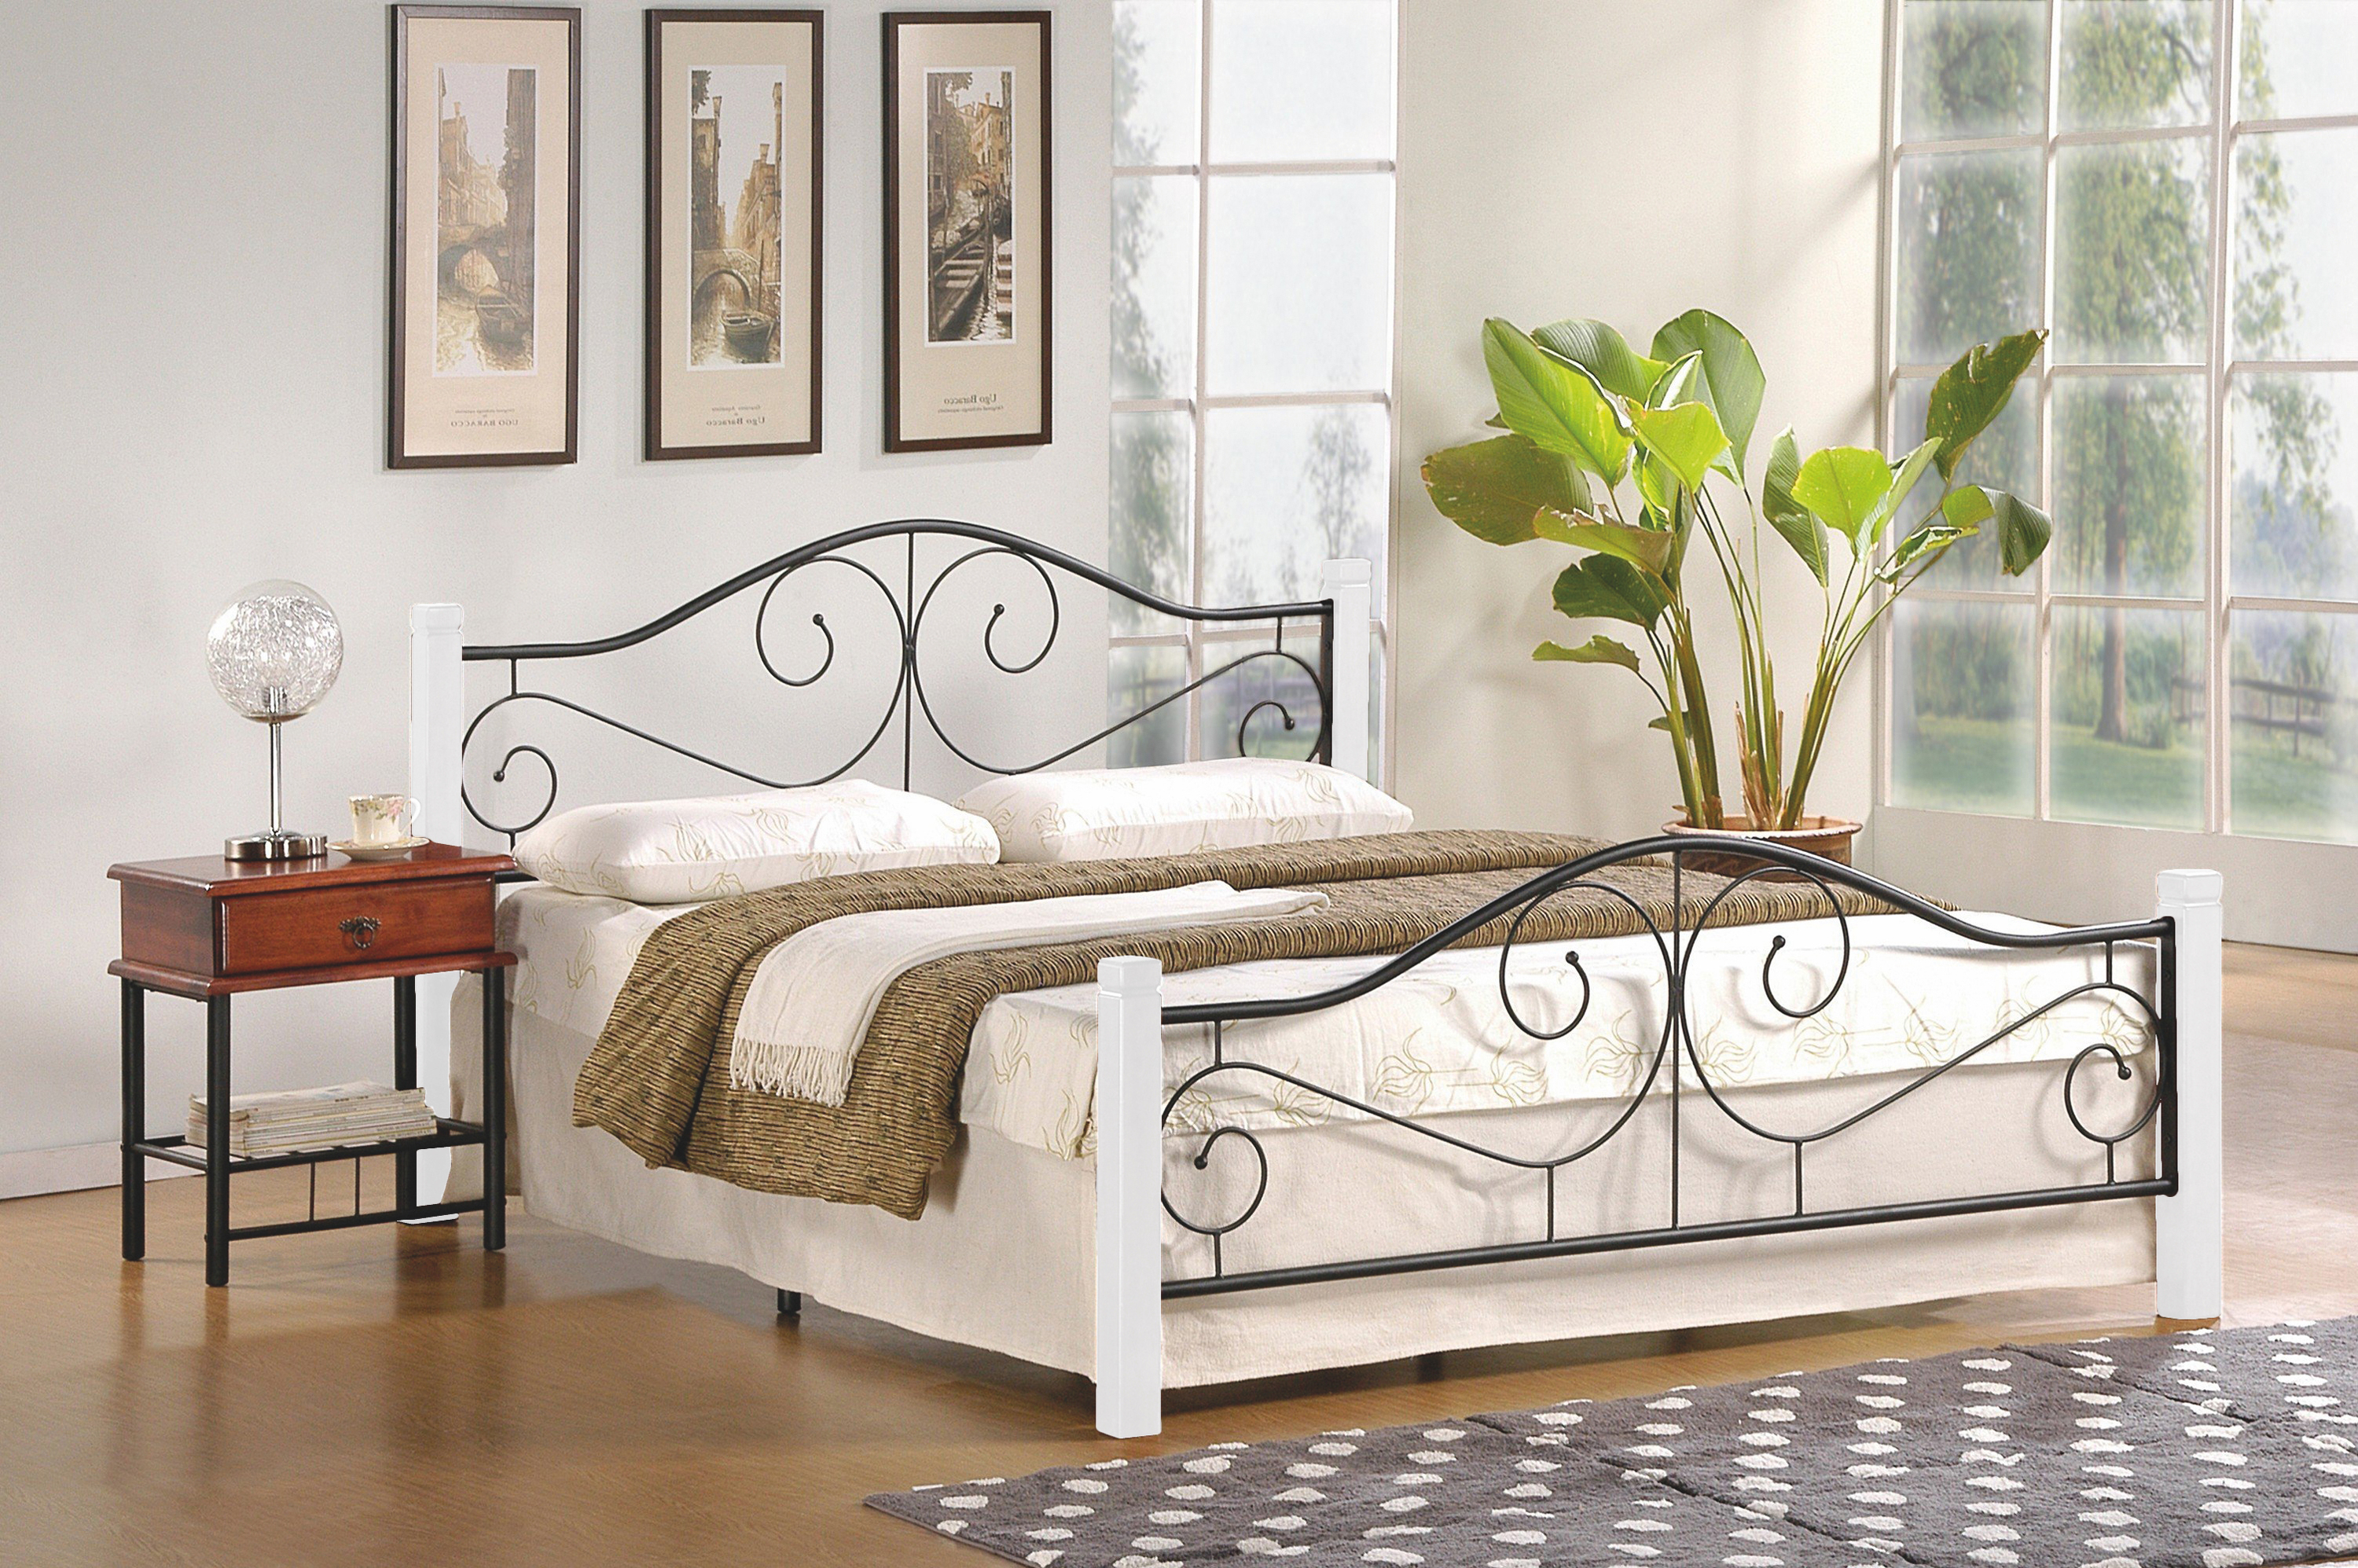 Łóżko Violetta 160x200 - biały / czarny klasyczne łóżko do sypialni